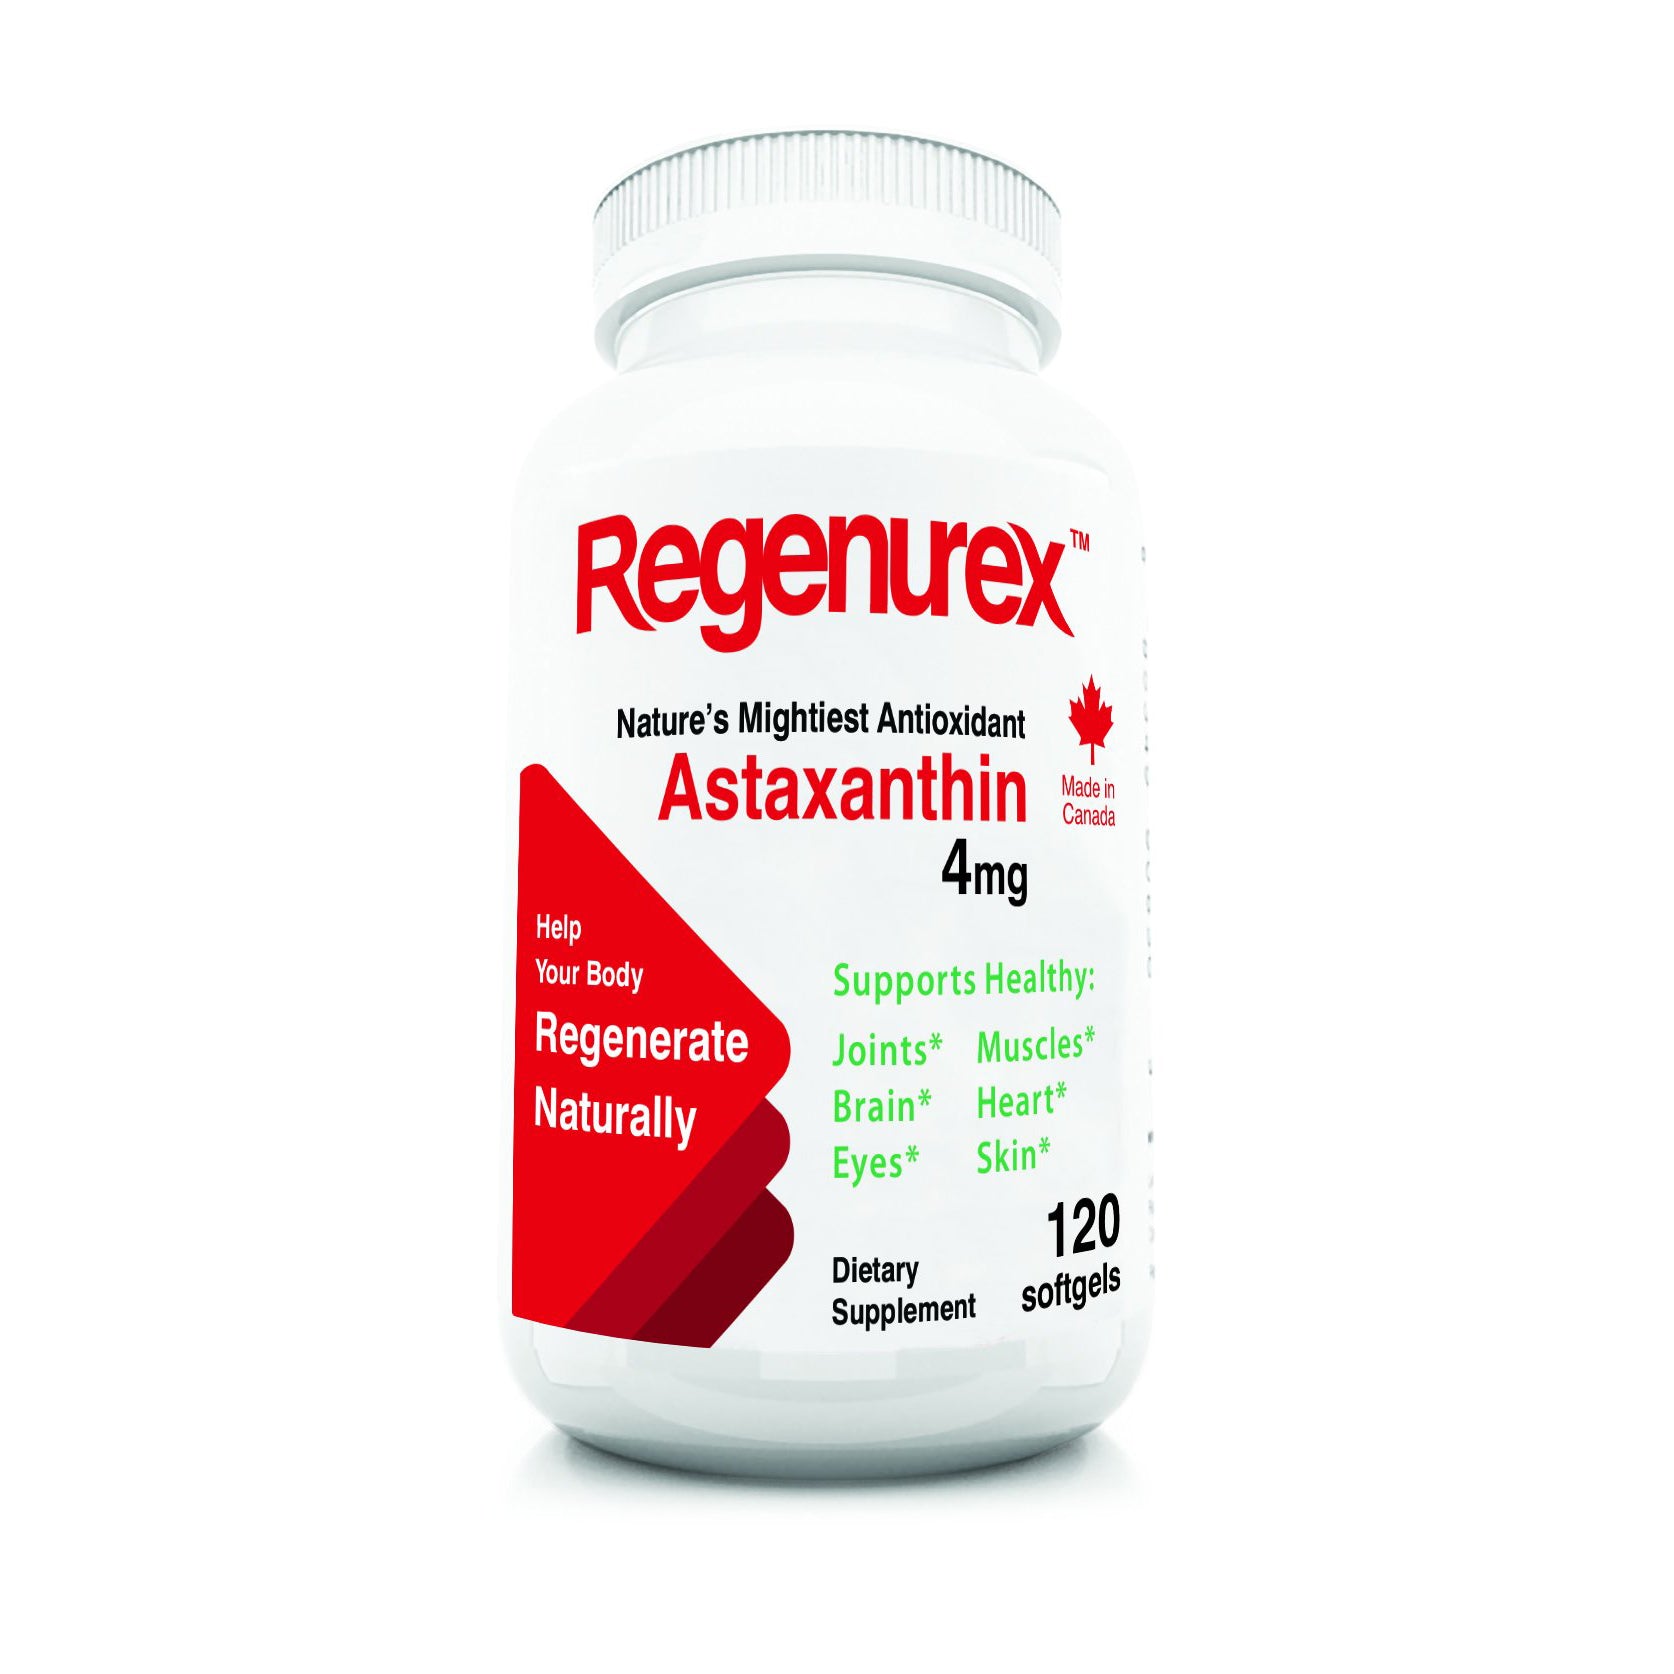 Astaxanthin<br>Regenurex